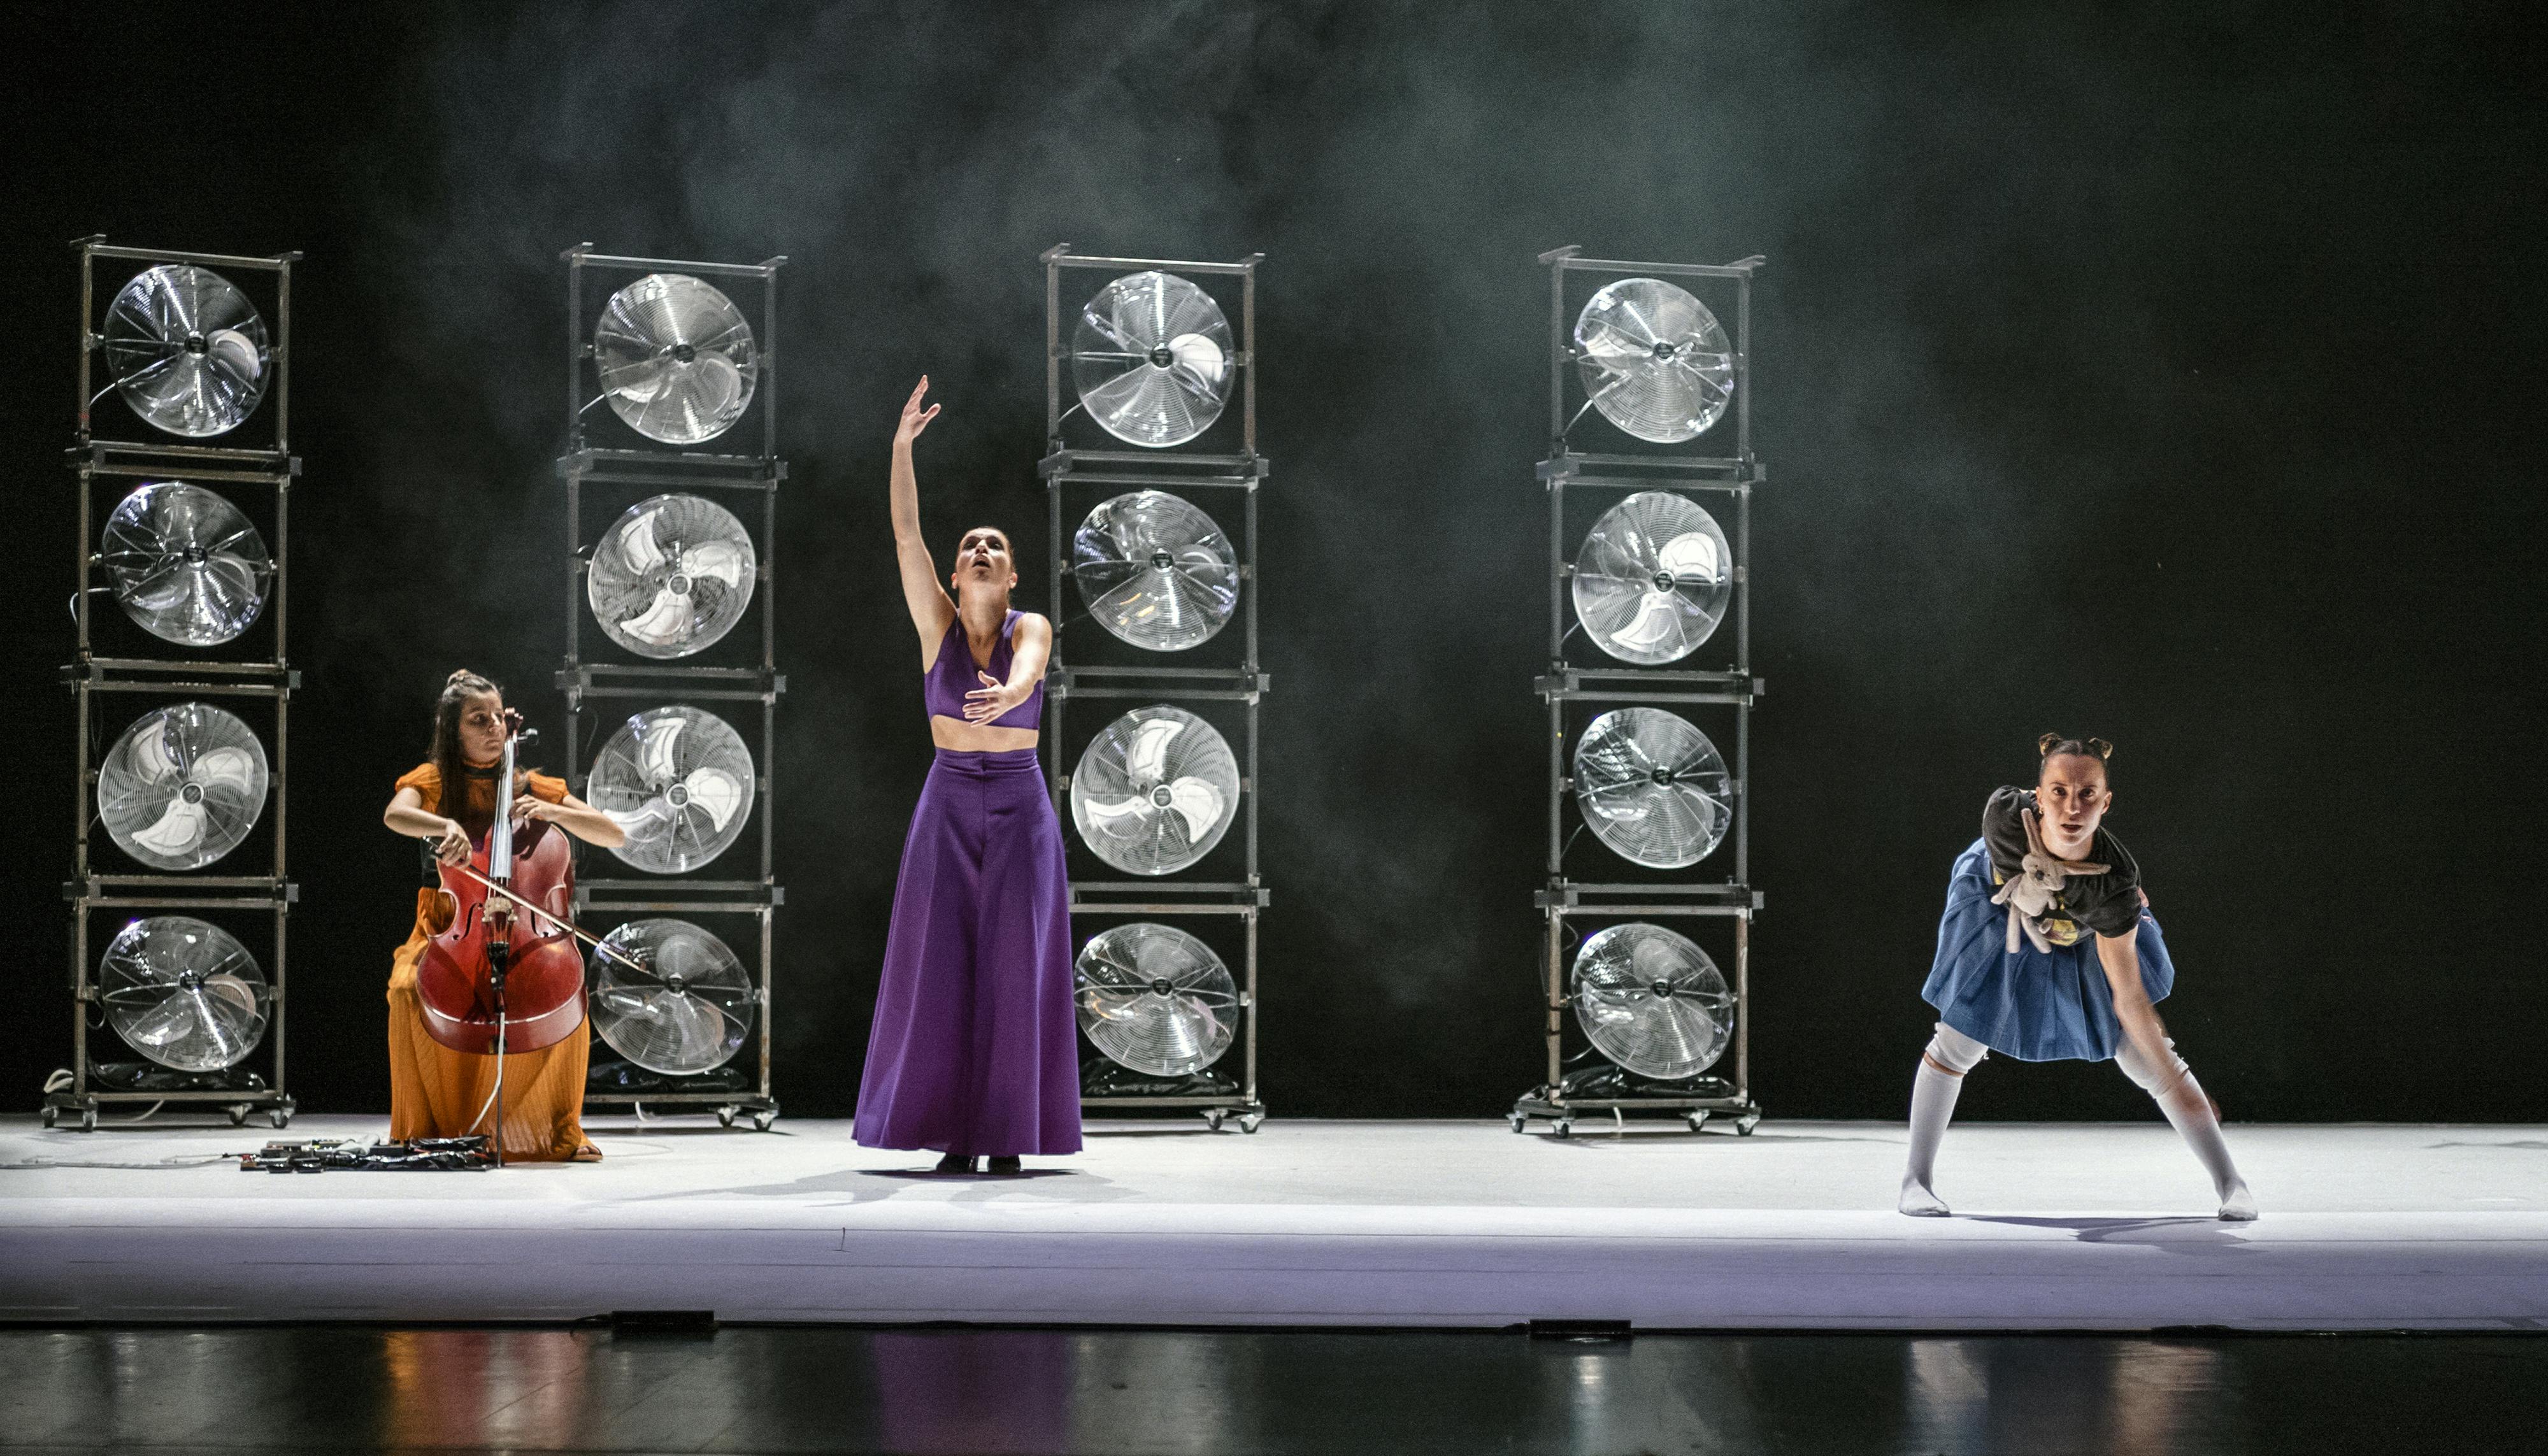 Le tre performer di YouMe, una violoncellista, una danzatrice di flamenco e una proveniente dall'hip hop, durante la performance. Dietro di loro quattro colonne di ventilatori impilati tra loro e del fumo scenico sullo sfondo buio.